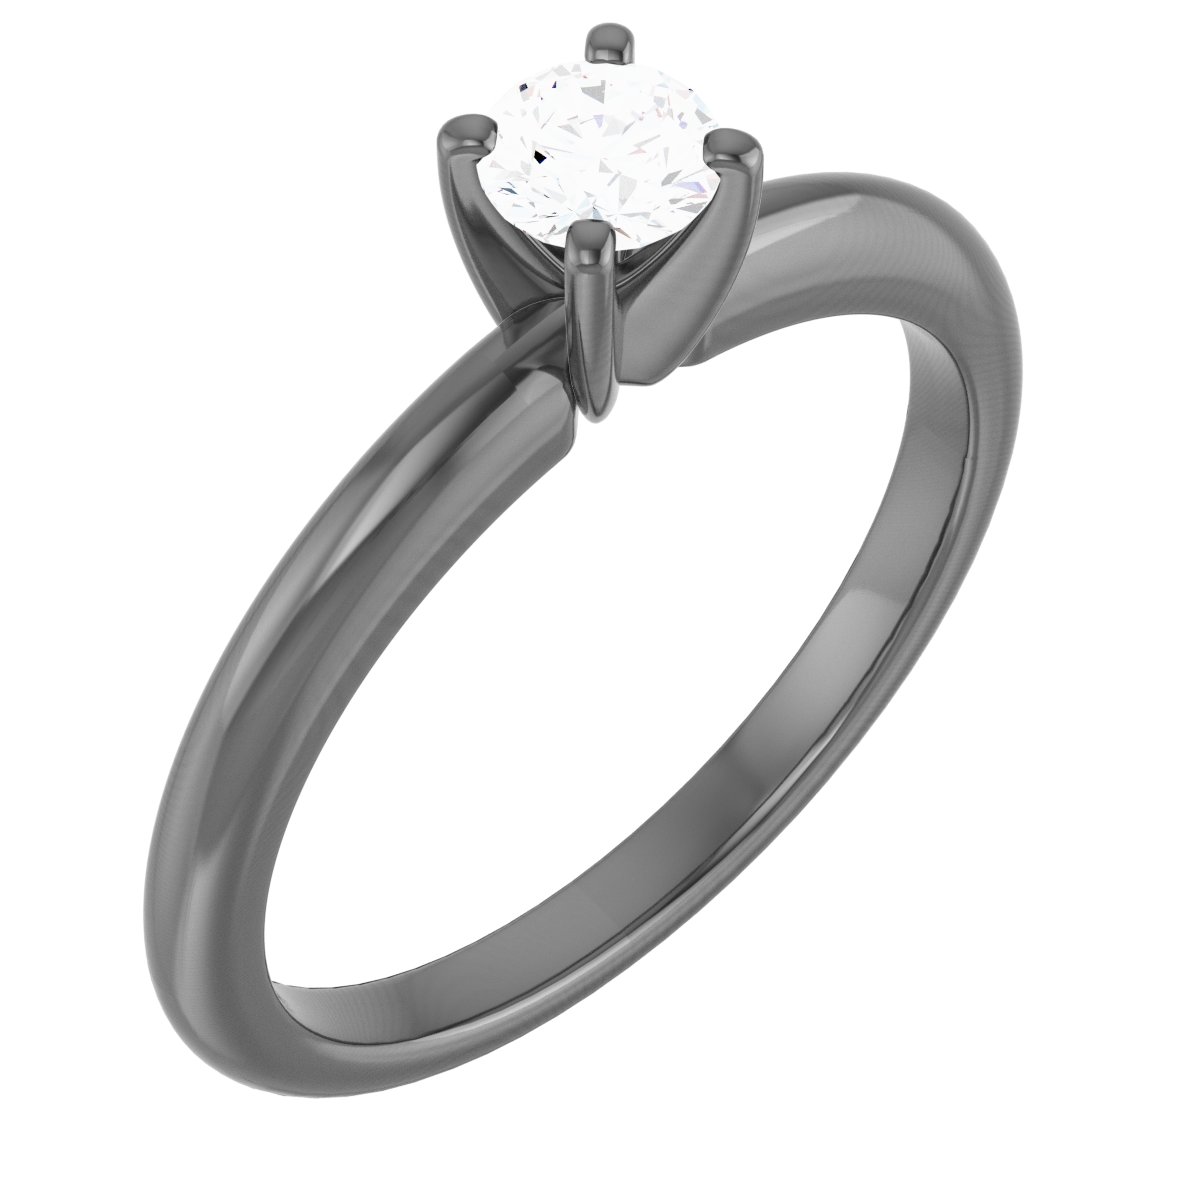 Platinum 4 mm Round Forever One Moissanite Engagement Ring Ref 13809224